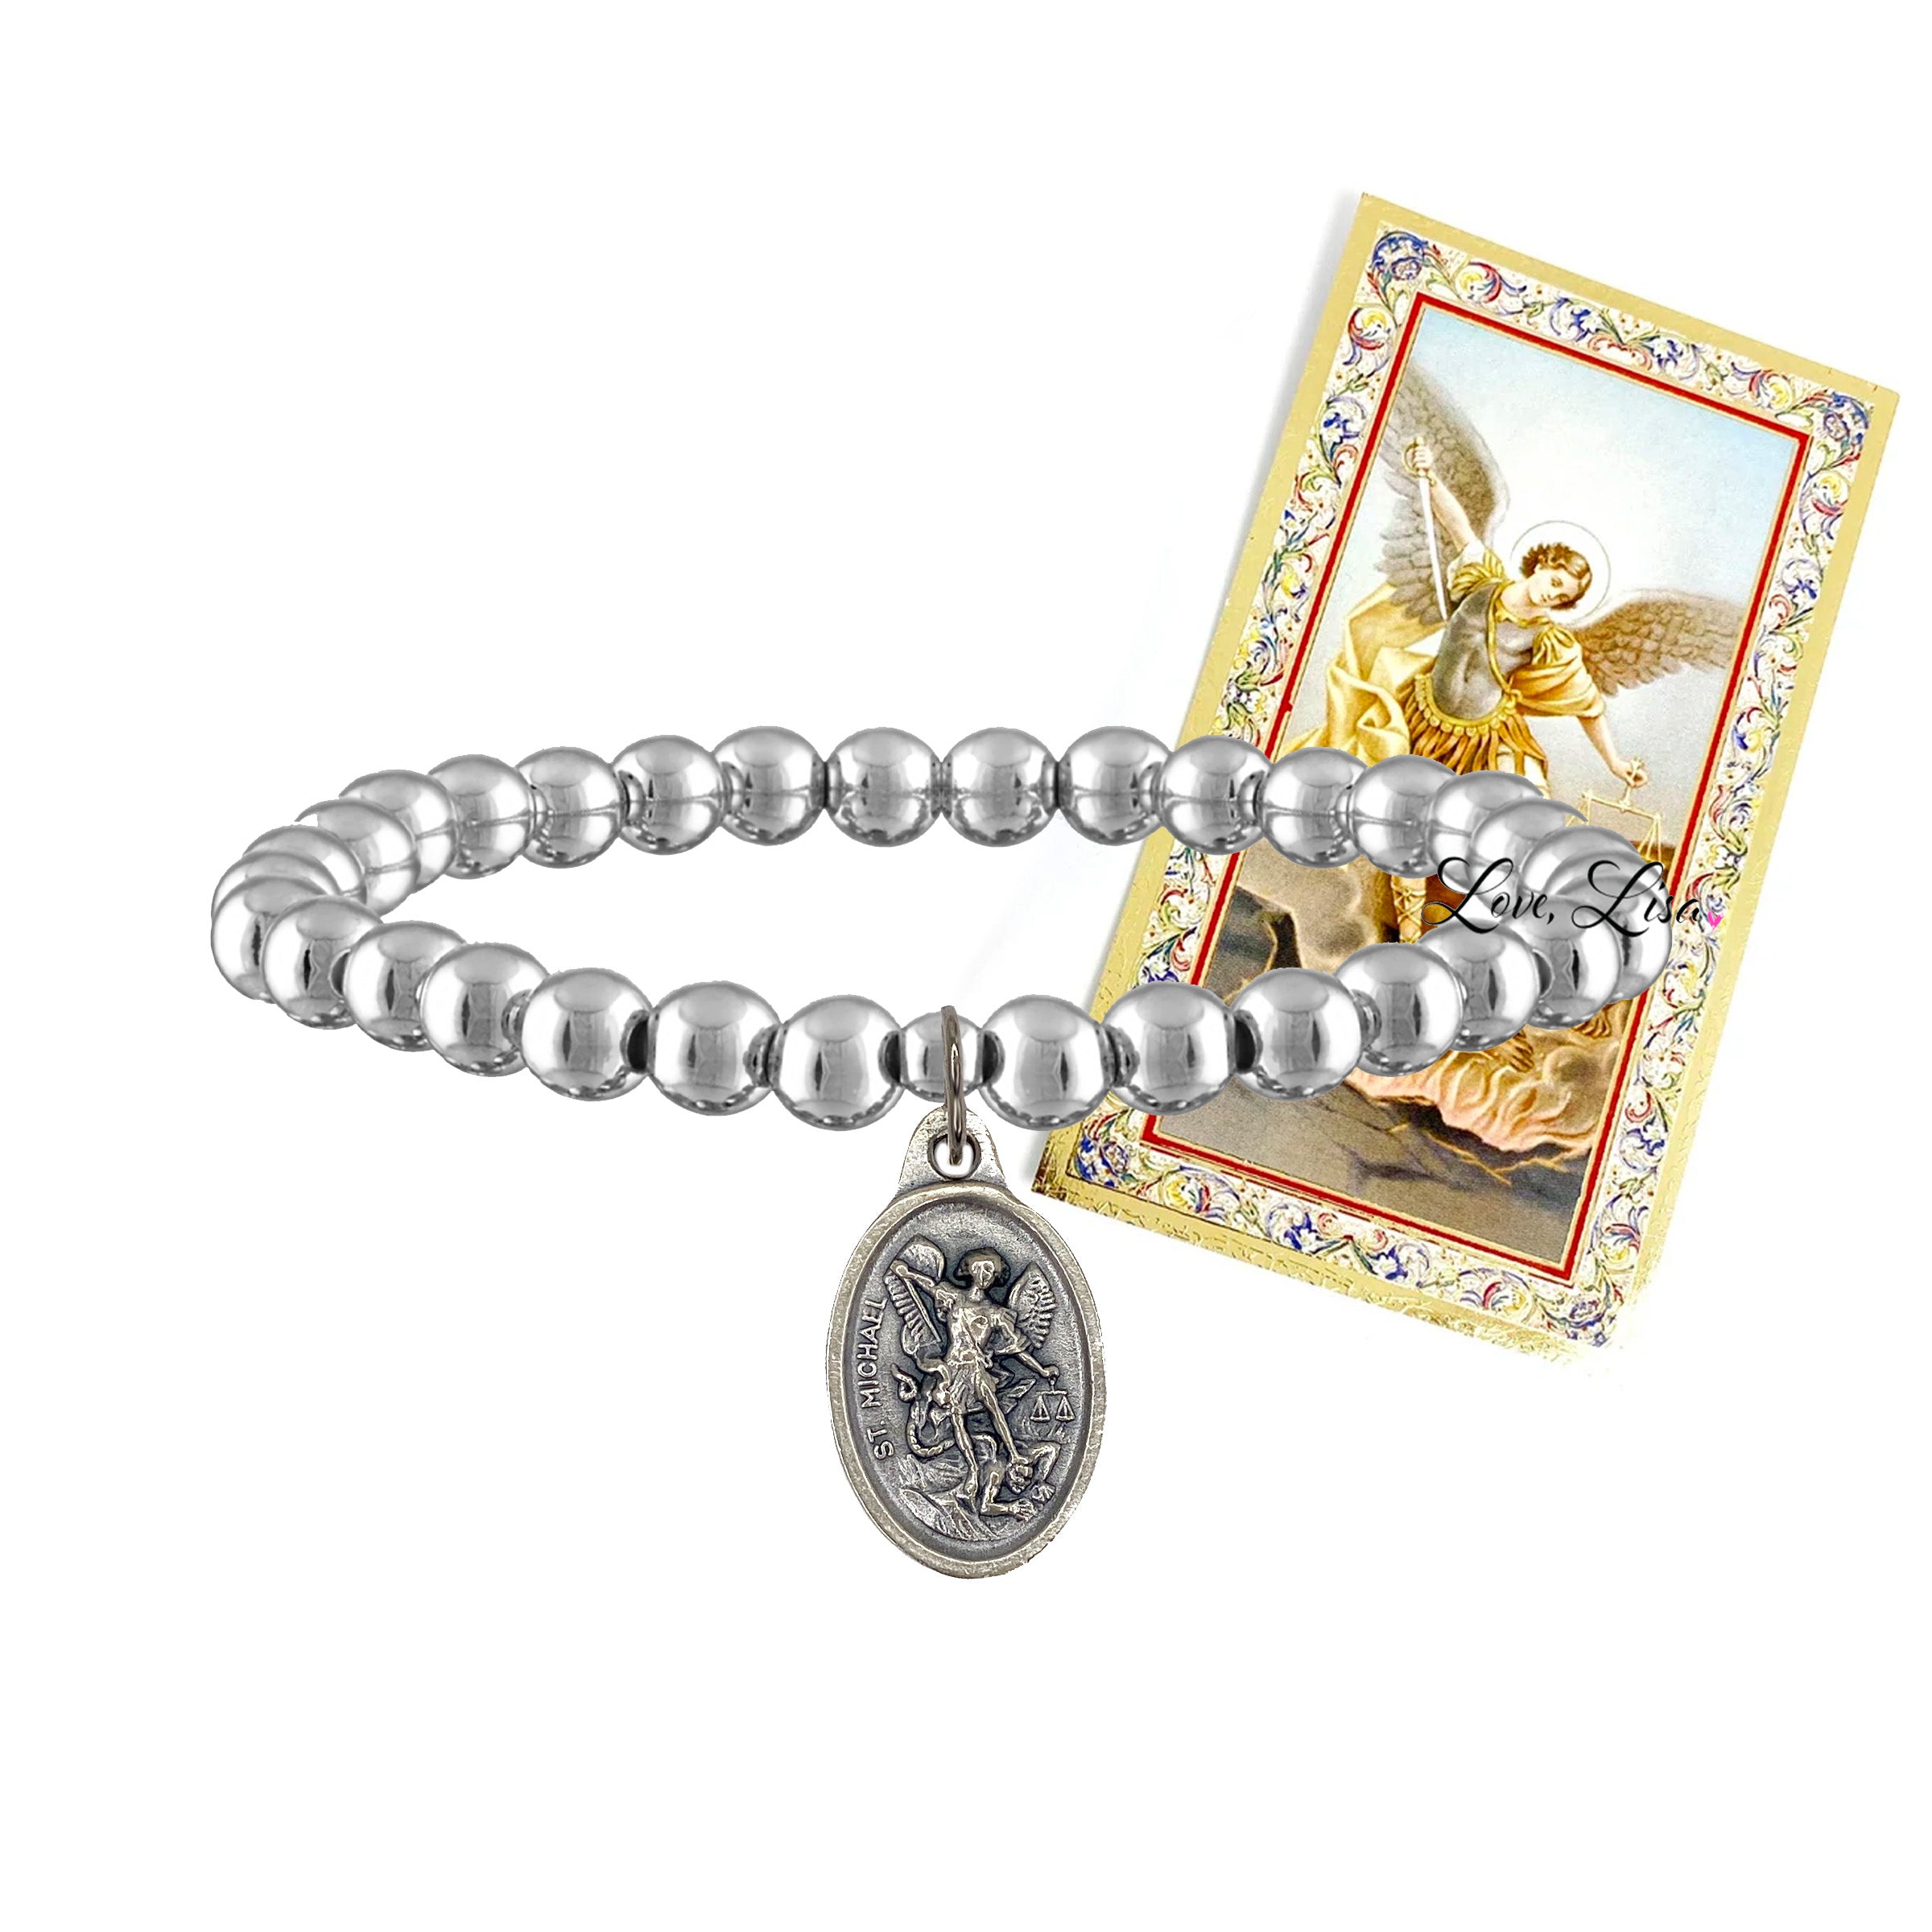 Bracelet Archangel Michael  Charm and Amulet